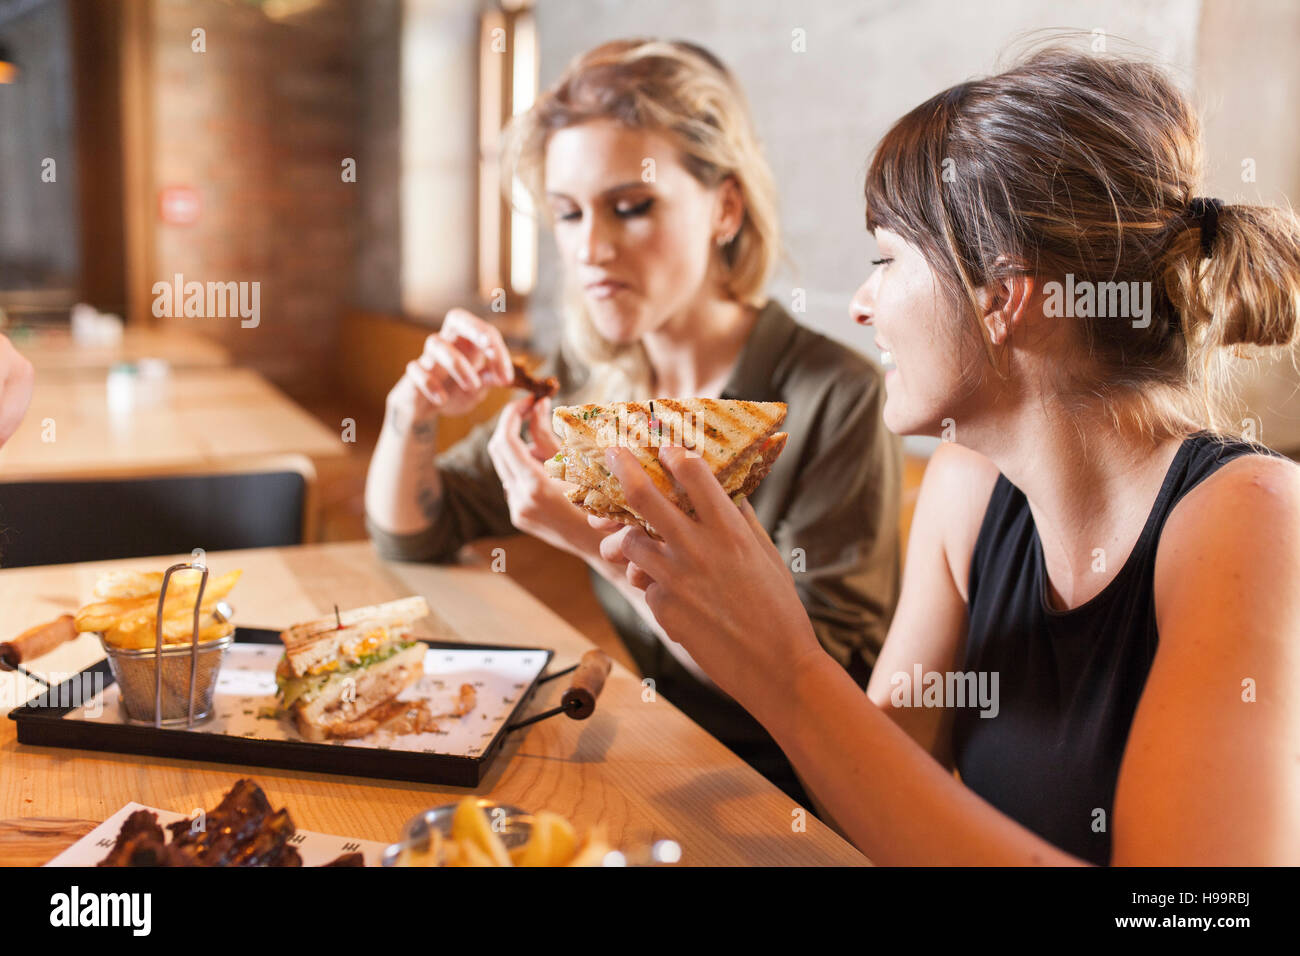 Deux femmes dans un café de manger des collations Banque D'Images